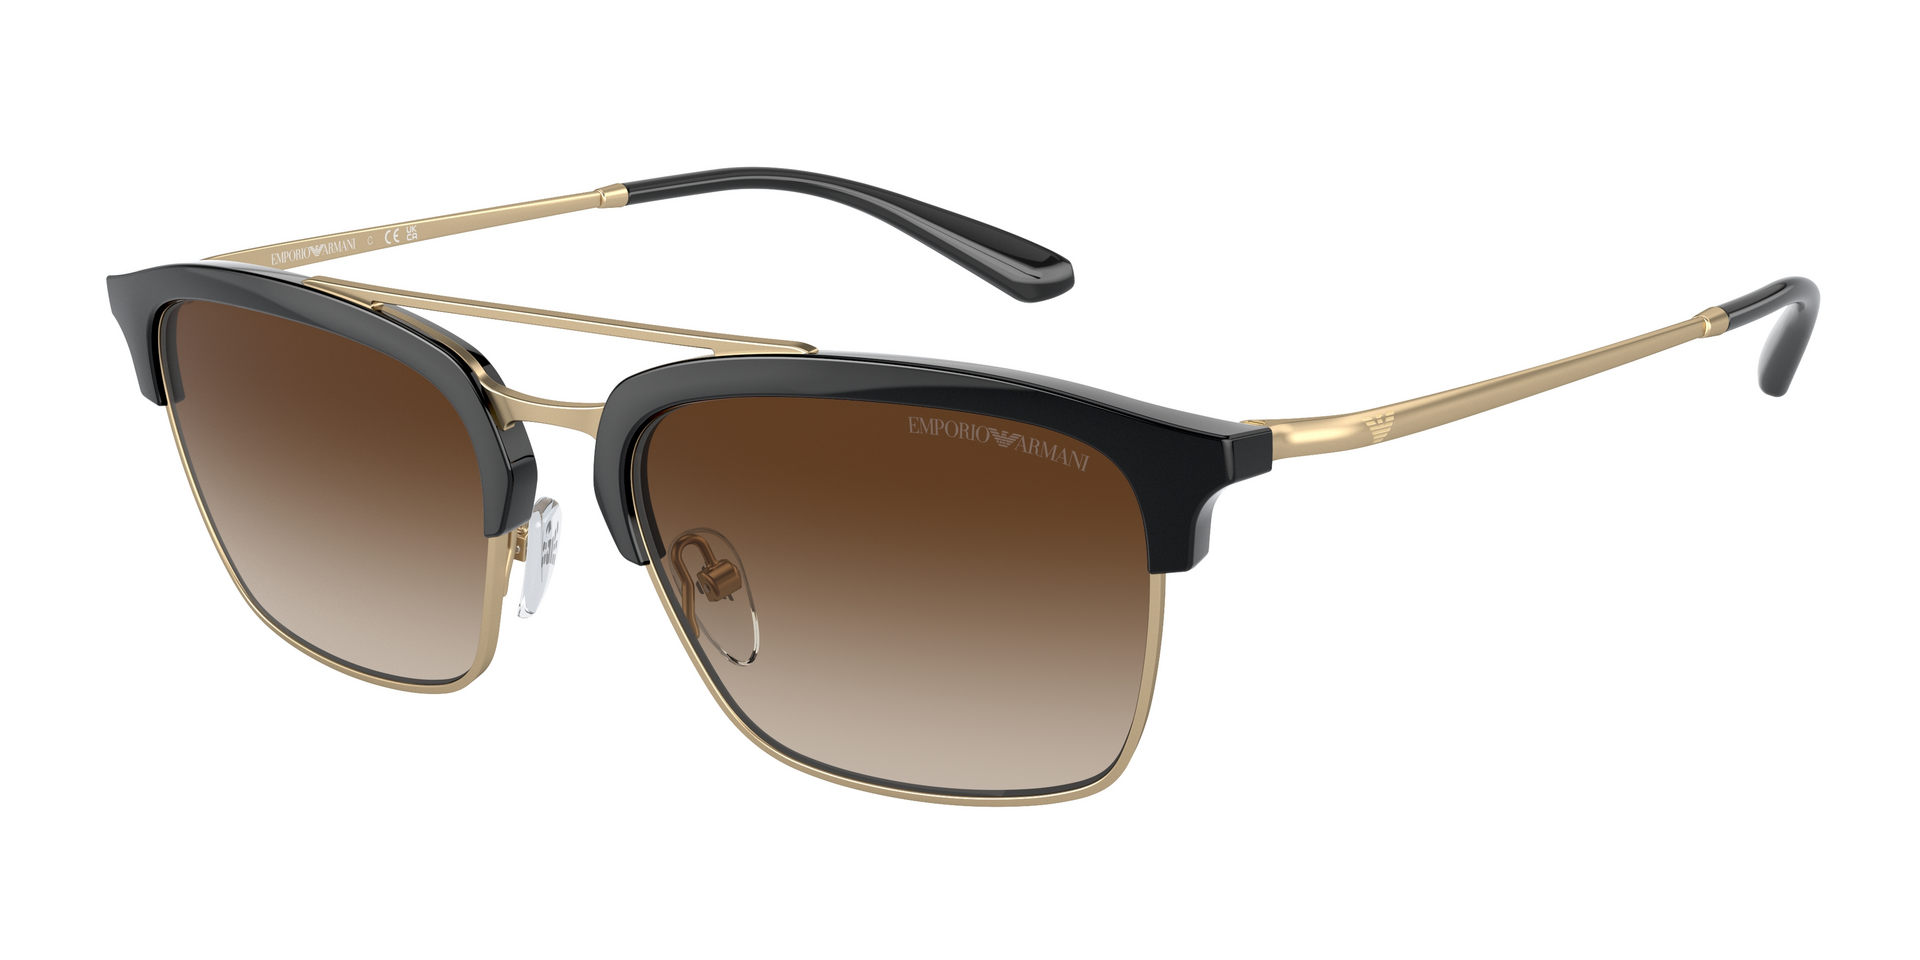 Das Bild zeigt die Sonnenbrille EA4228 300213 von der Marke Emporio Armani in schwarz/gold.